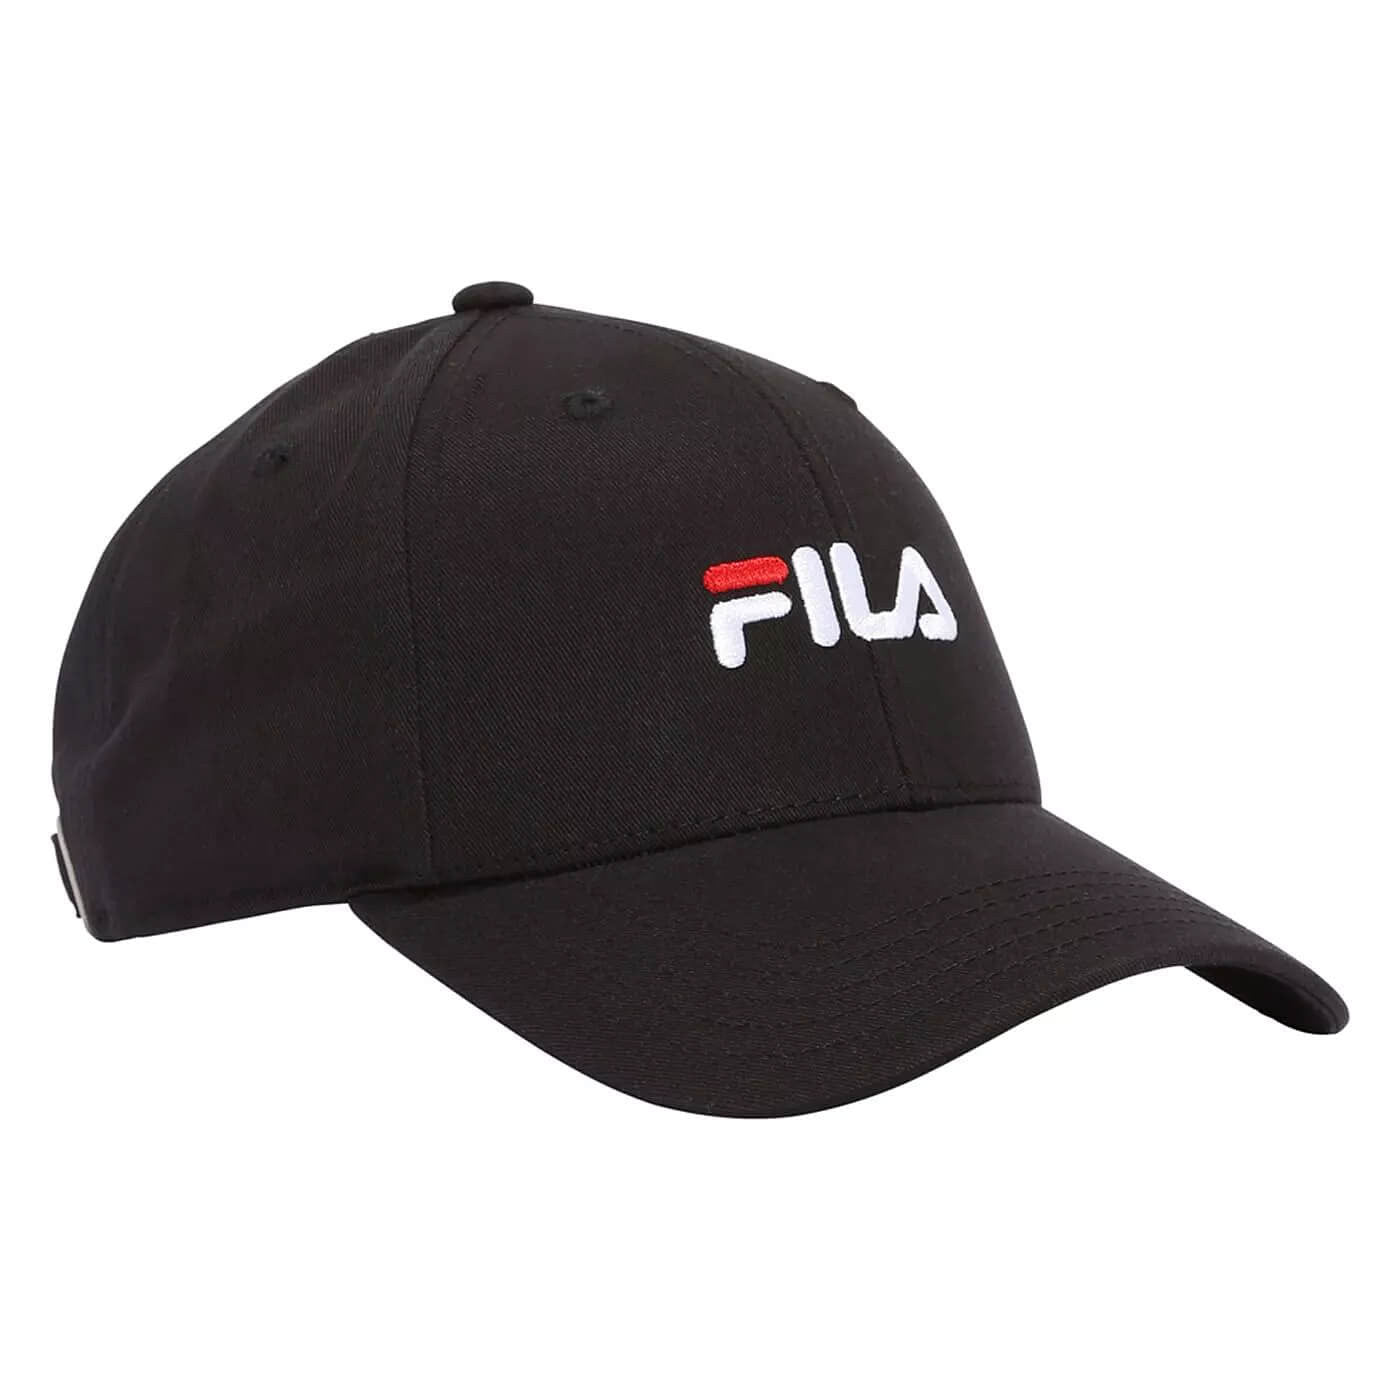 Fila BRASOV 6 panel cap with linear logo - strap back Black